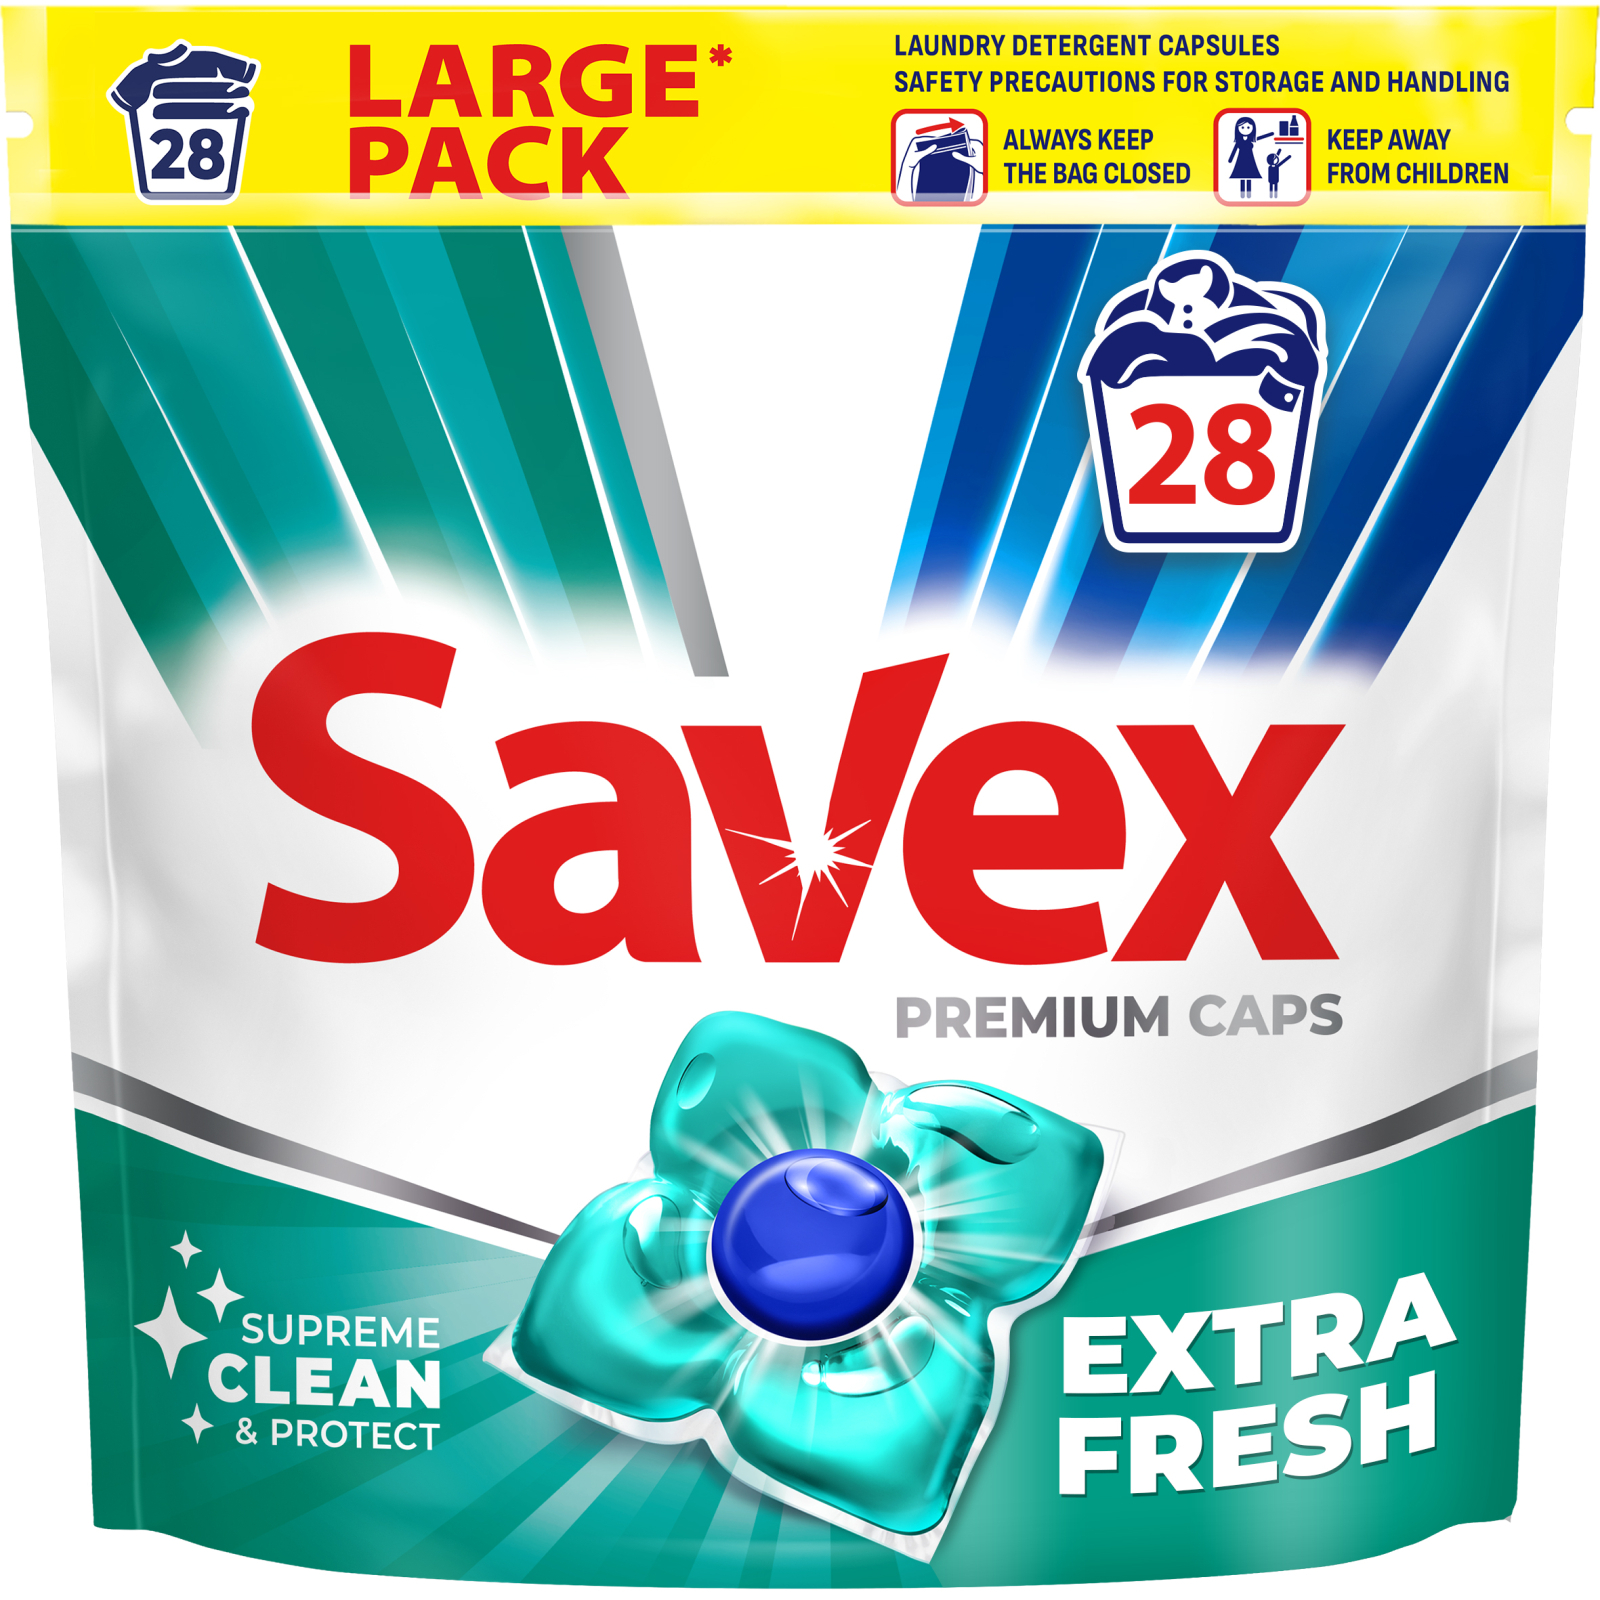 Капсулы для стирки Savex Super Caps Extra Fresh 25 шт. (3800024046896)